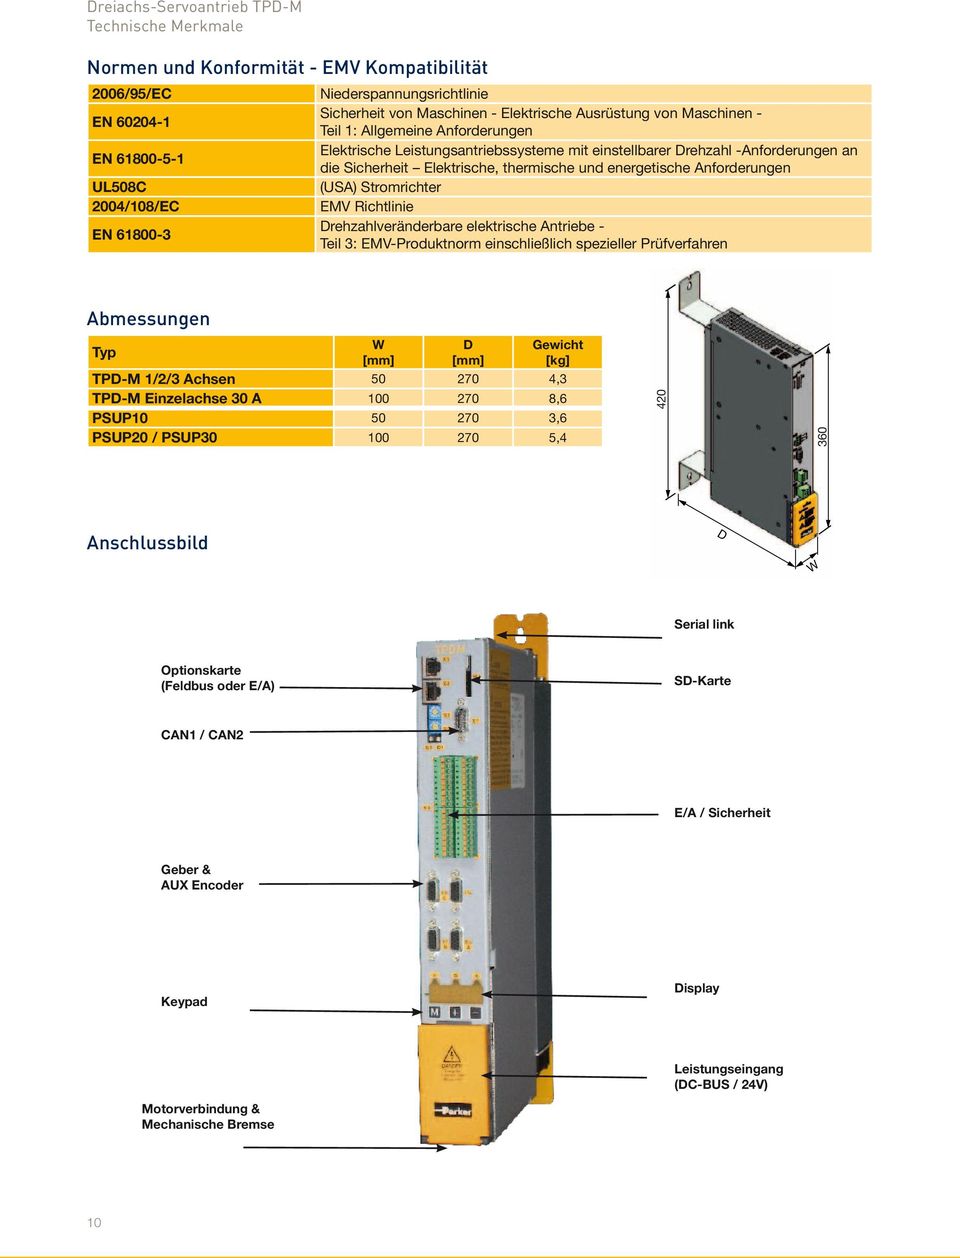 Anforderungen (USA) Stromrichter EMV Richtlinie Drehzahlveränderbare elektrische Antriebe - Teil 3: EMV-Produktnorm einschließlich spezieller Prüfverfahren Abmessungen Typ W [mm] D [mm] Gewicht [kg]